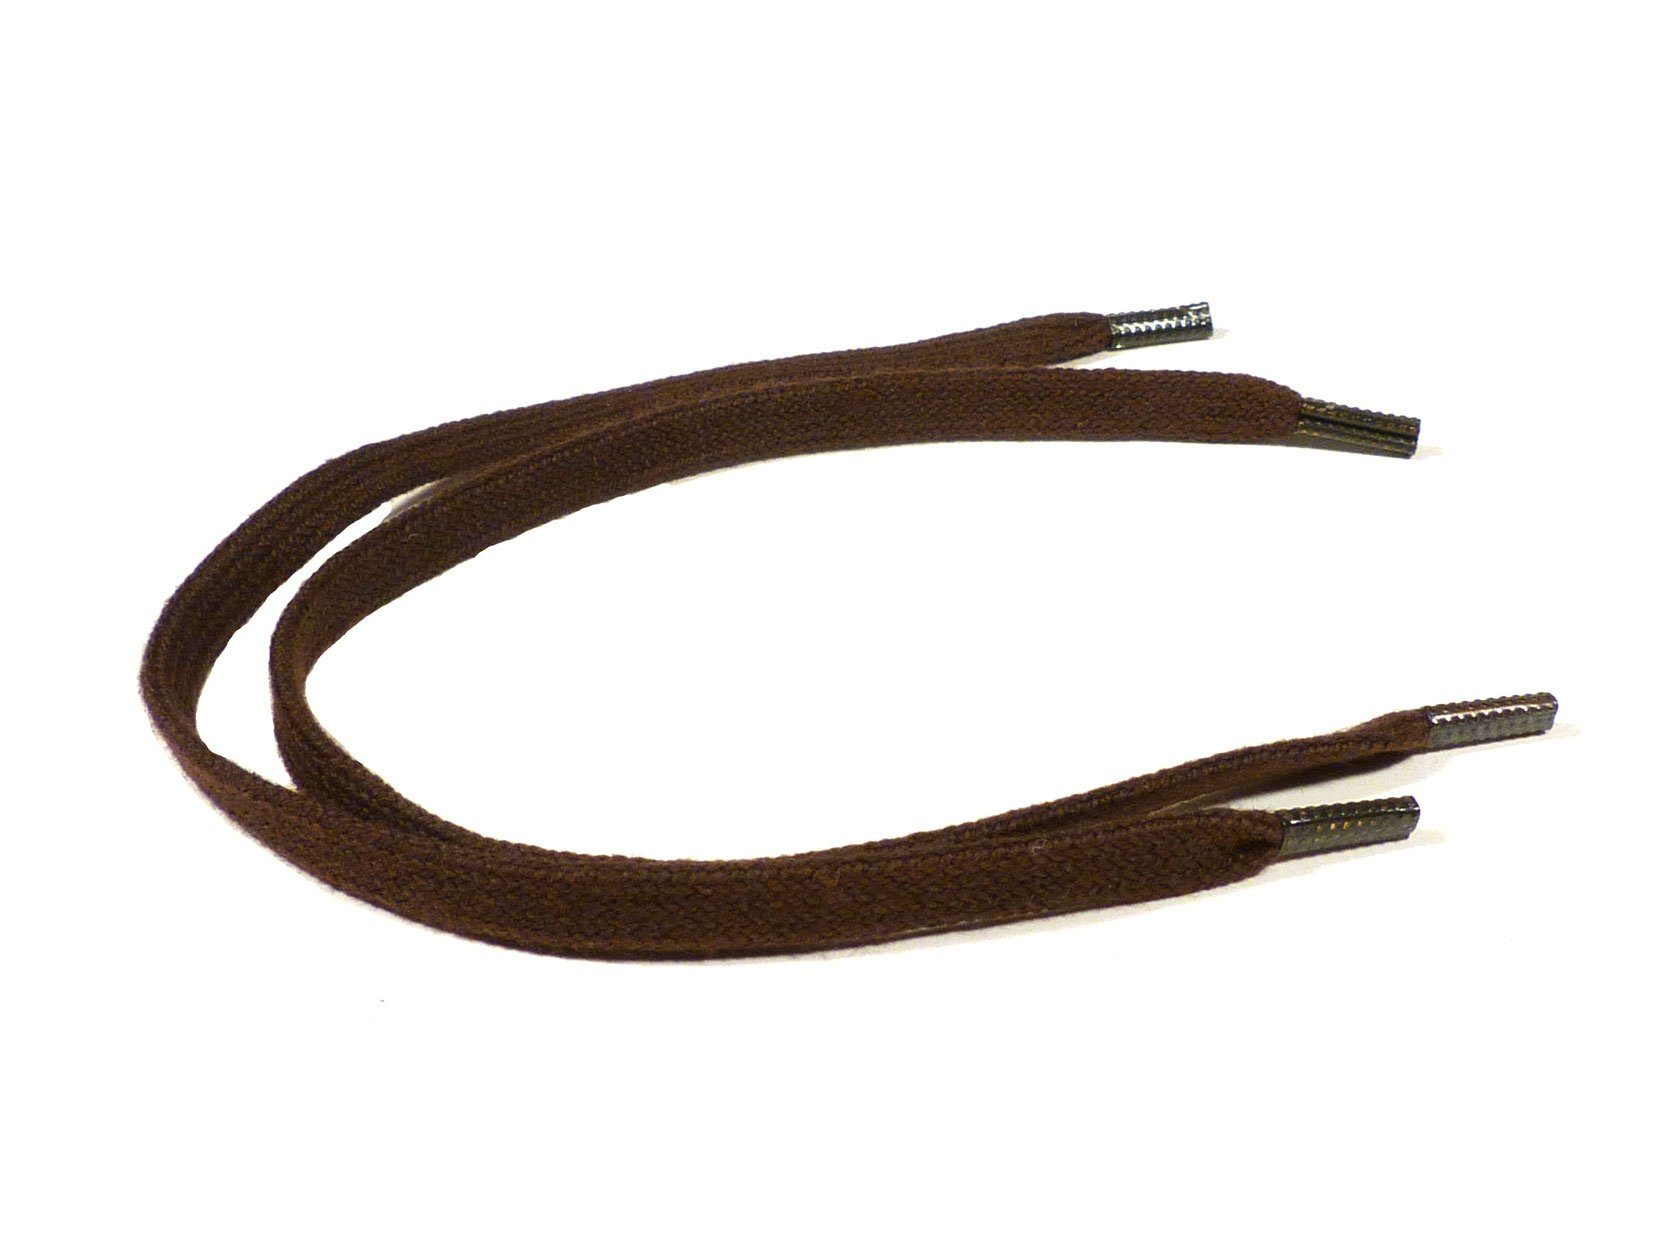 Rema Schnürsenkel Rema Schnürsenkel Dunkelbraun - flach - ca. 5 mm schmal für Sie nach Wunschlänge geschnitten und mit Metallenden versehen